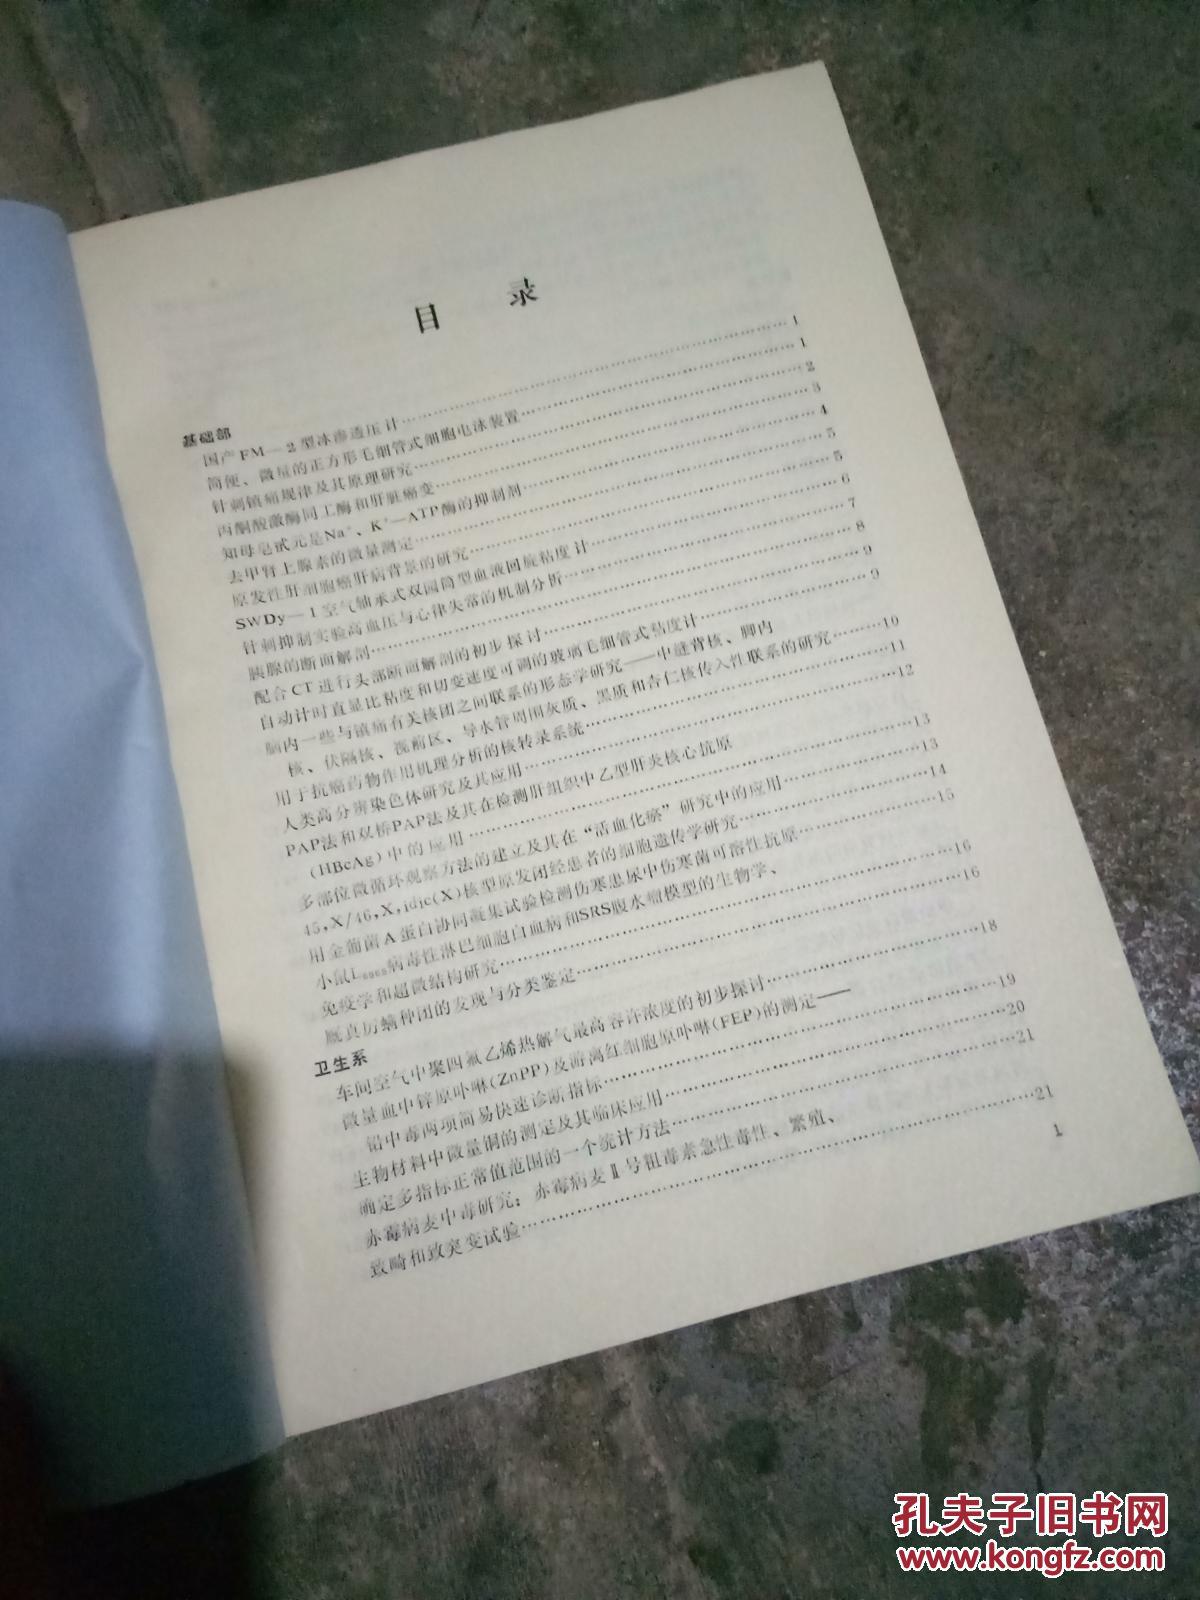 【图】科研成果摘要汇编(1979-1982)_上海第一